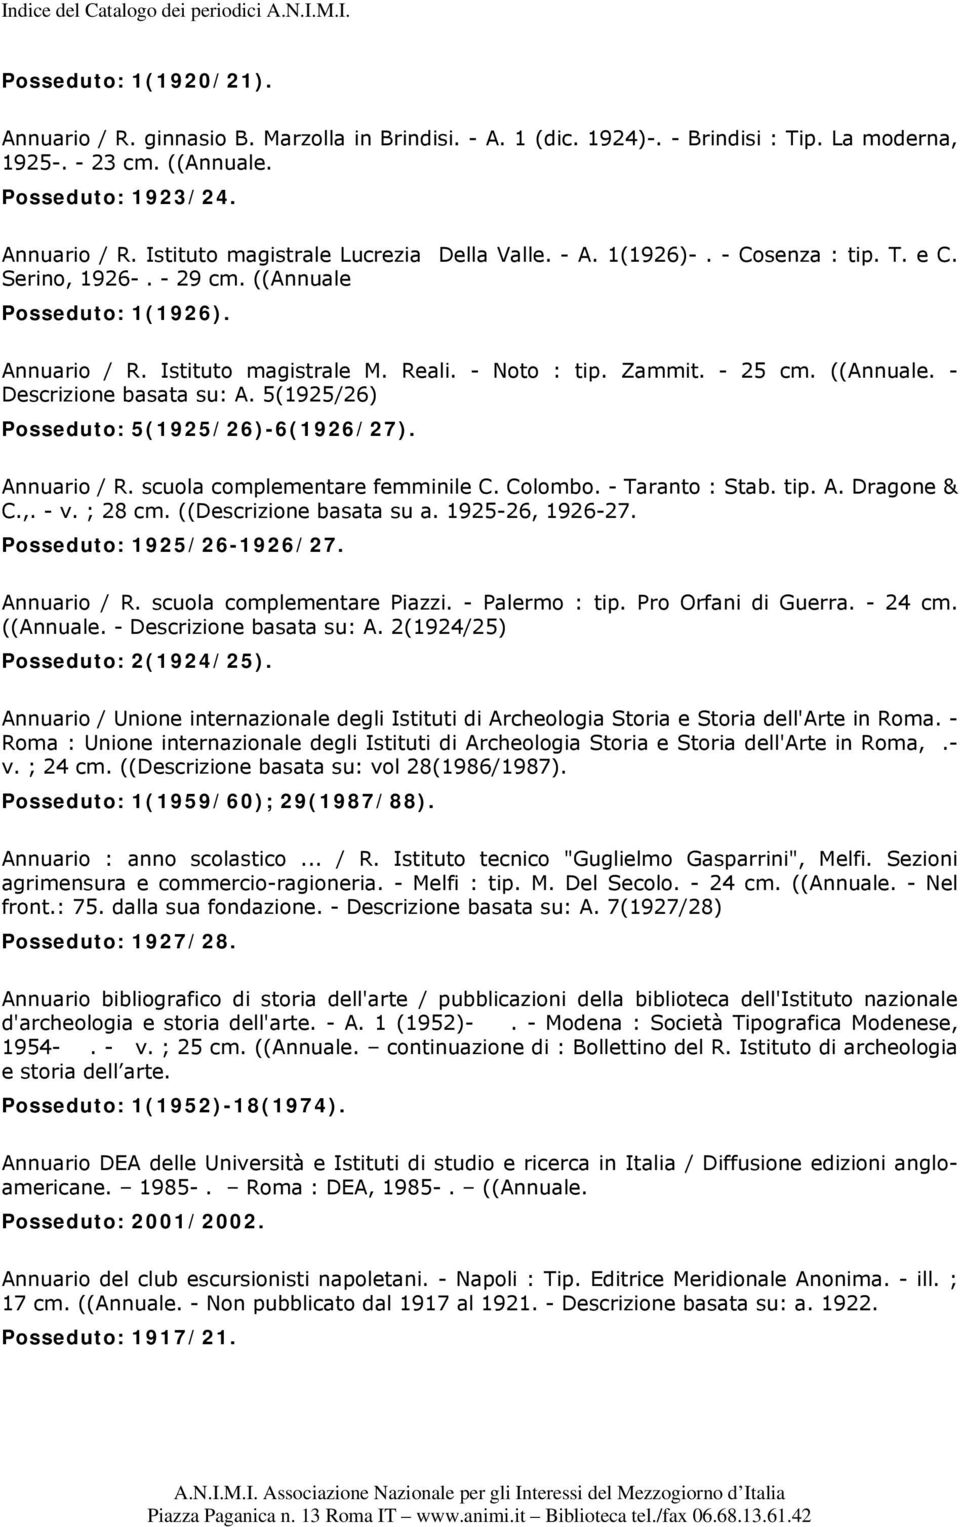 5(1925/26) Posseduto: 5(1925/26)-6(1926/27). Annuario / R. scuola complementare femminile C. Colombo. - Taranto : Stab. tip. A. Dragone & C.,. - v. ; 28 cm. ((Descrizione basata su a.